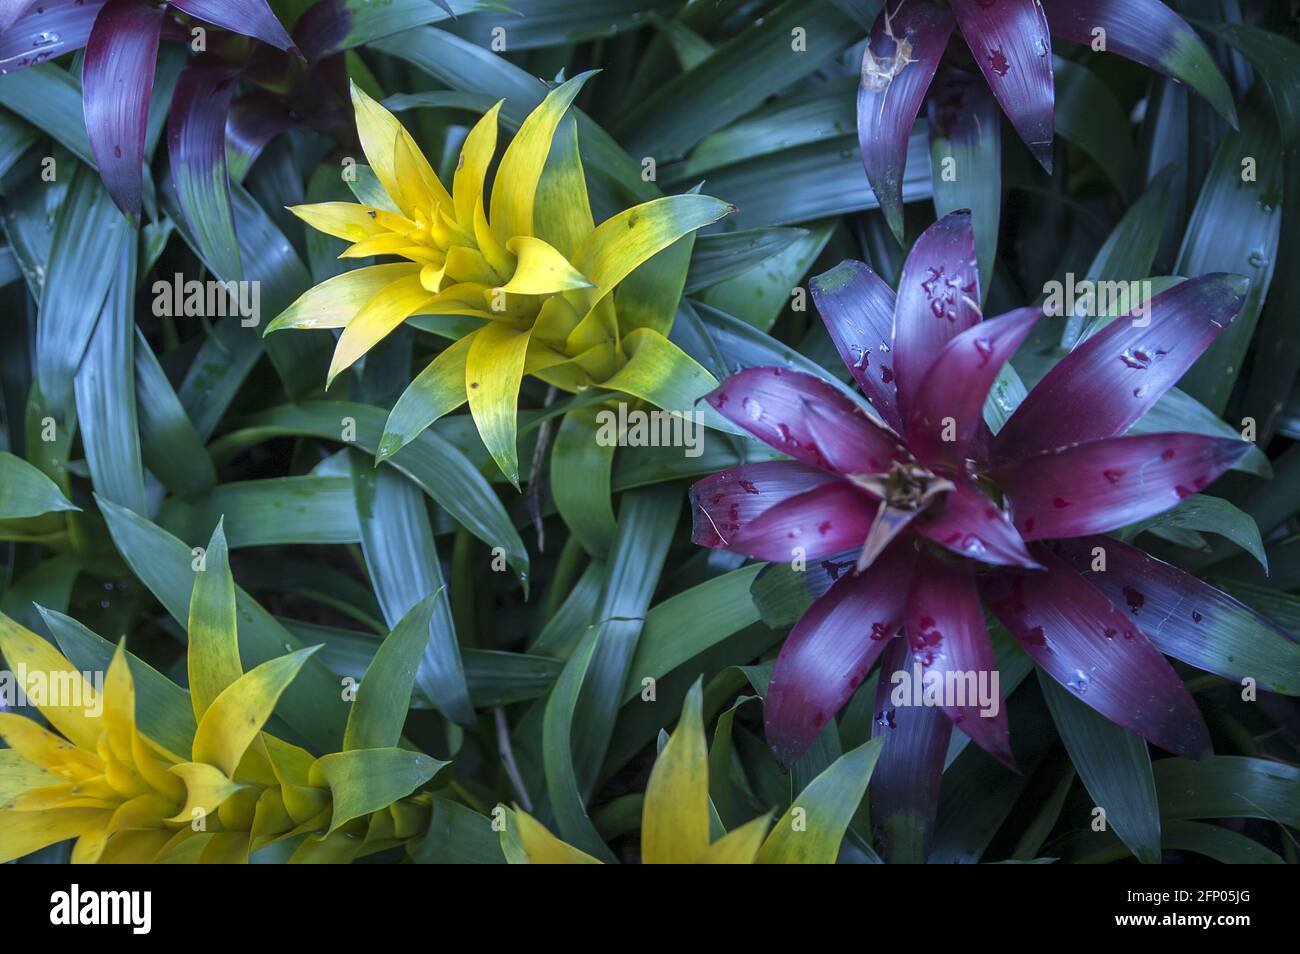 Singapore, Singapur, Asia, Asia, Asia; Giardino Botanico; Botanischer Garten; Guzmania - primo piano; Roślina tropikalna i egzotyczna, kolorowe liście Foto Stock